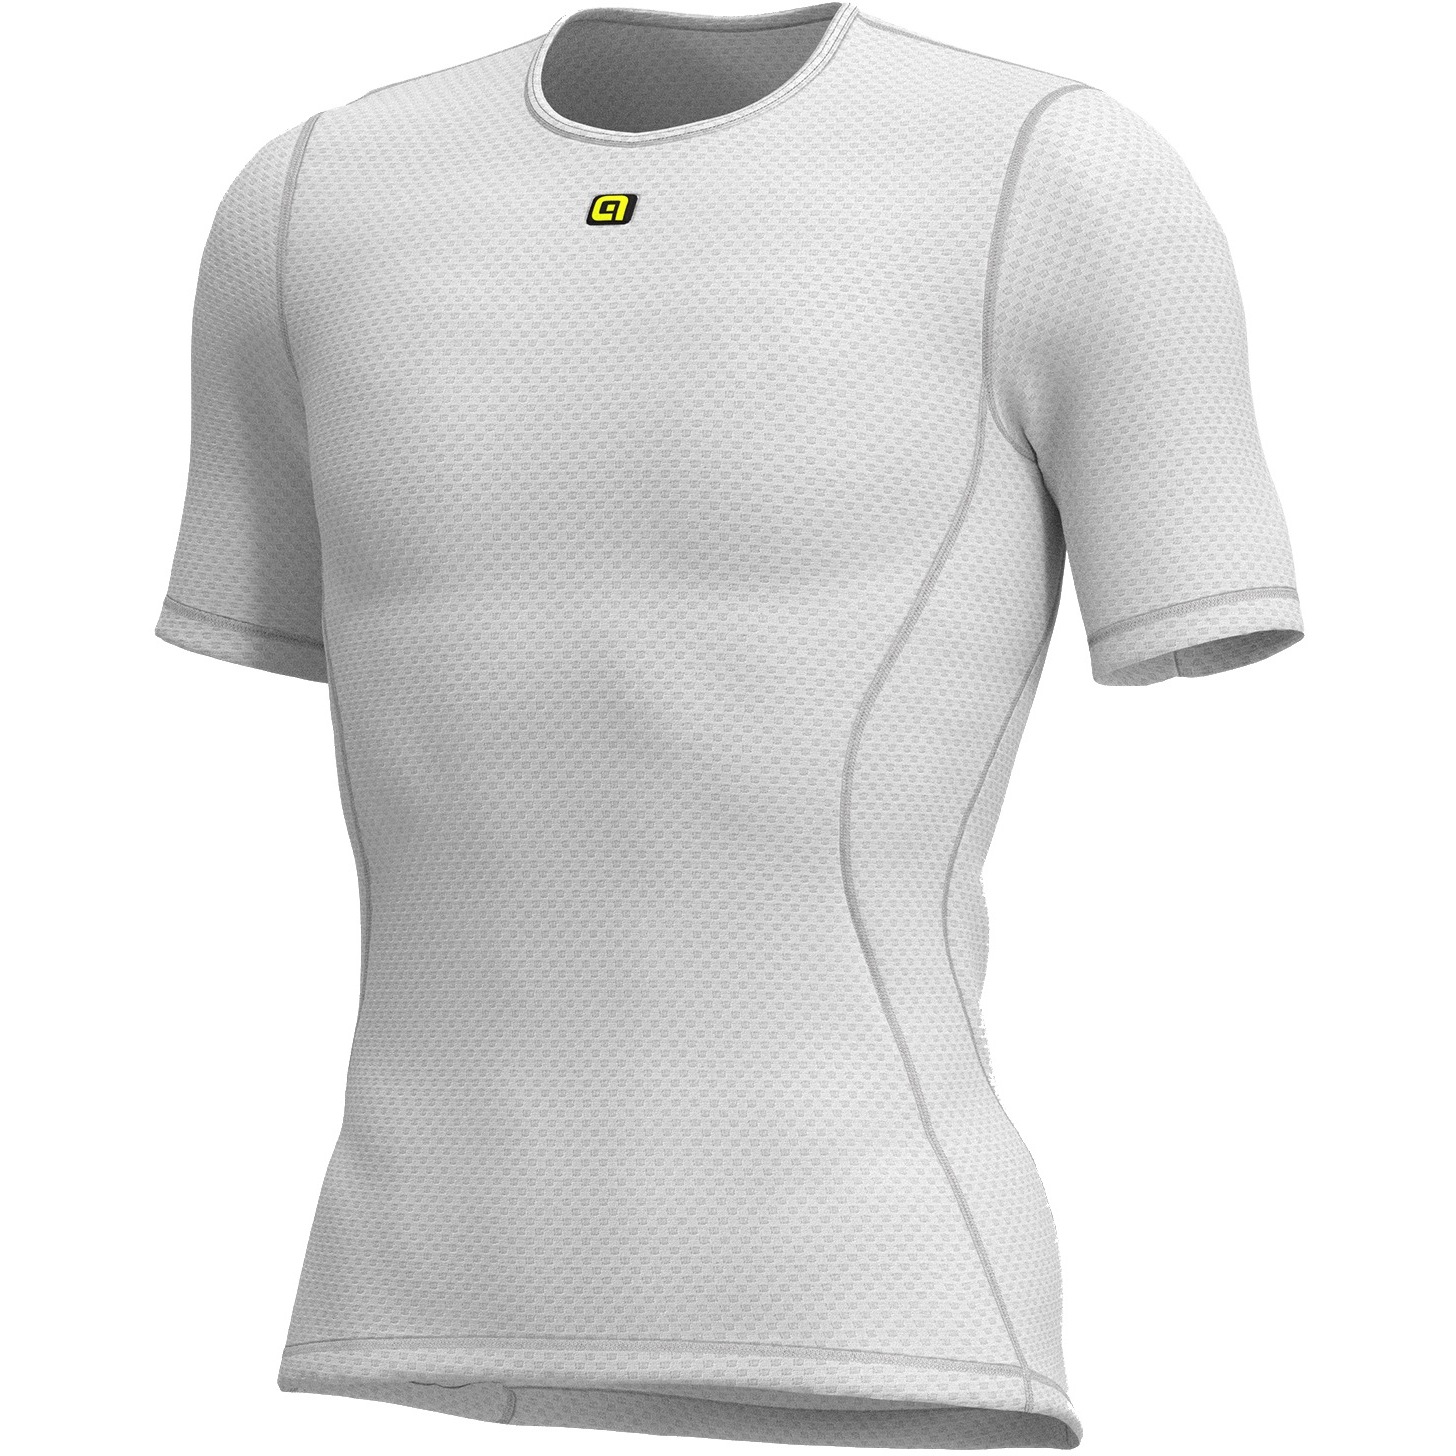 Produktbild von Alé Velo Active Kurzarm-Unterhemd - weiß